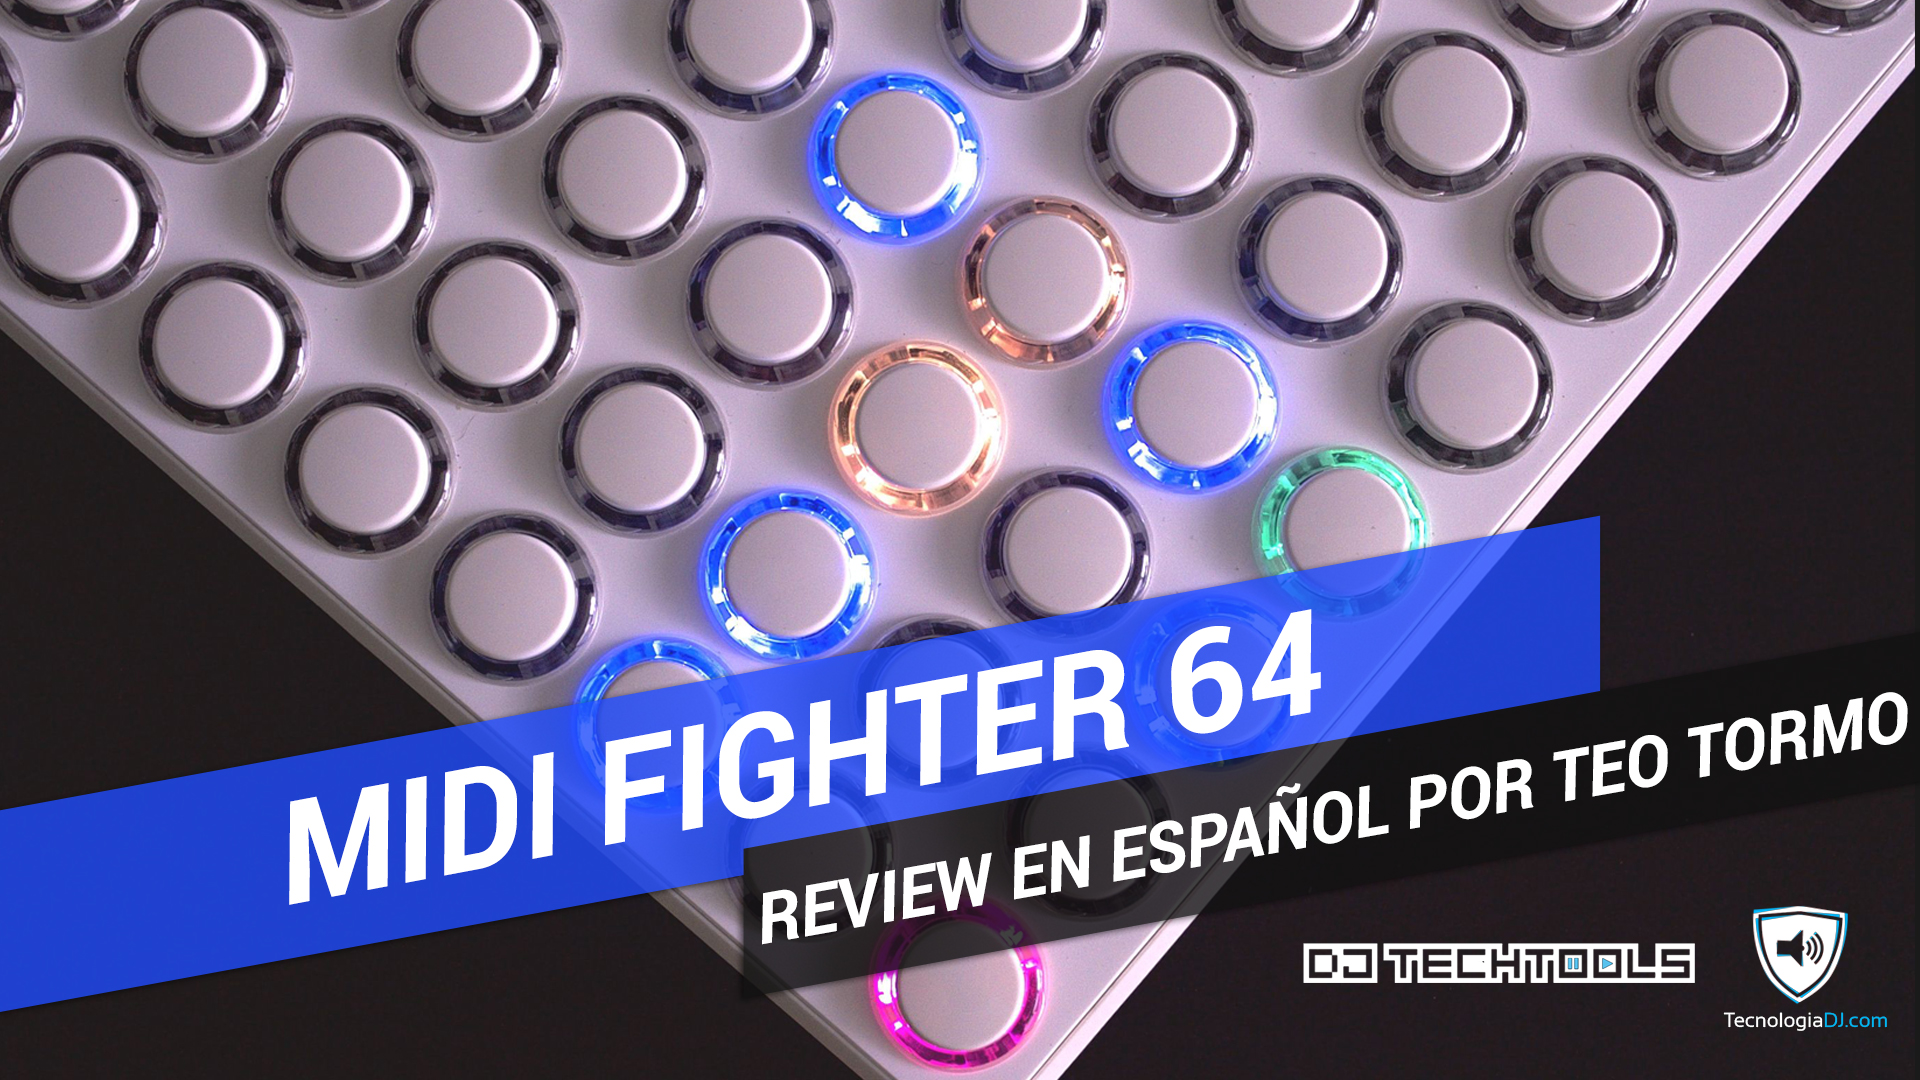 Review en español controlador Midi Fighter 64 de DJ Tech Tools